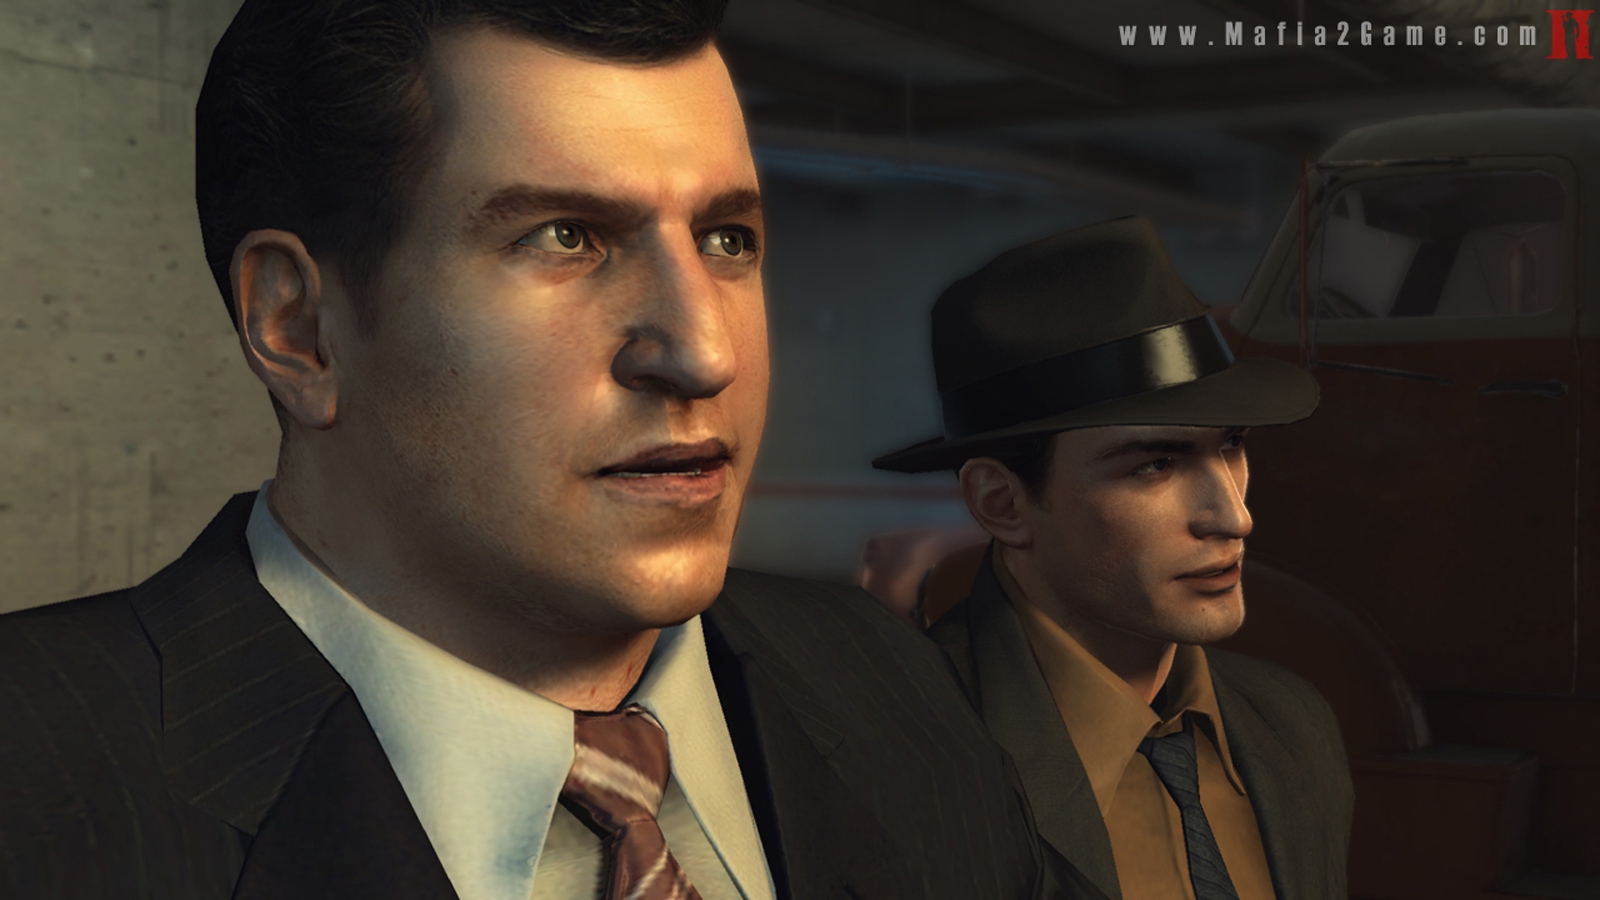 Скриншот из игры Mafia 2 под номером 26